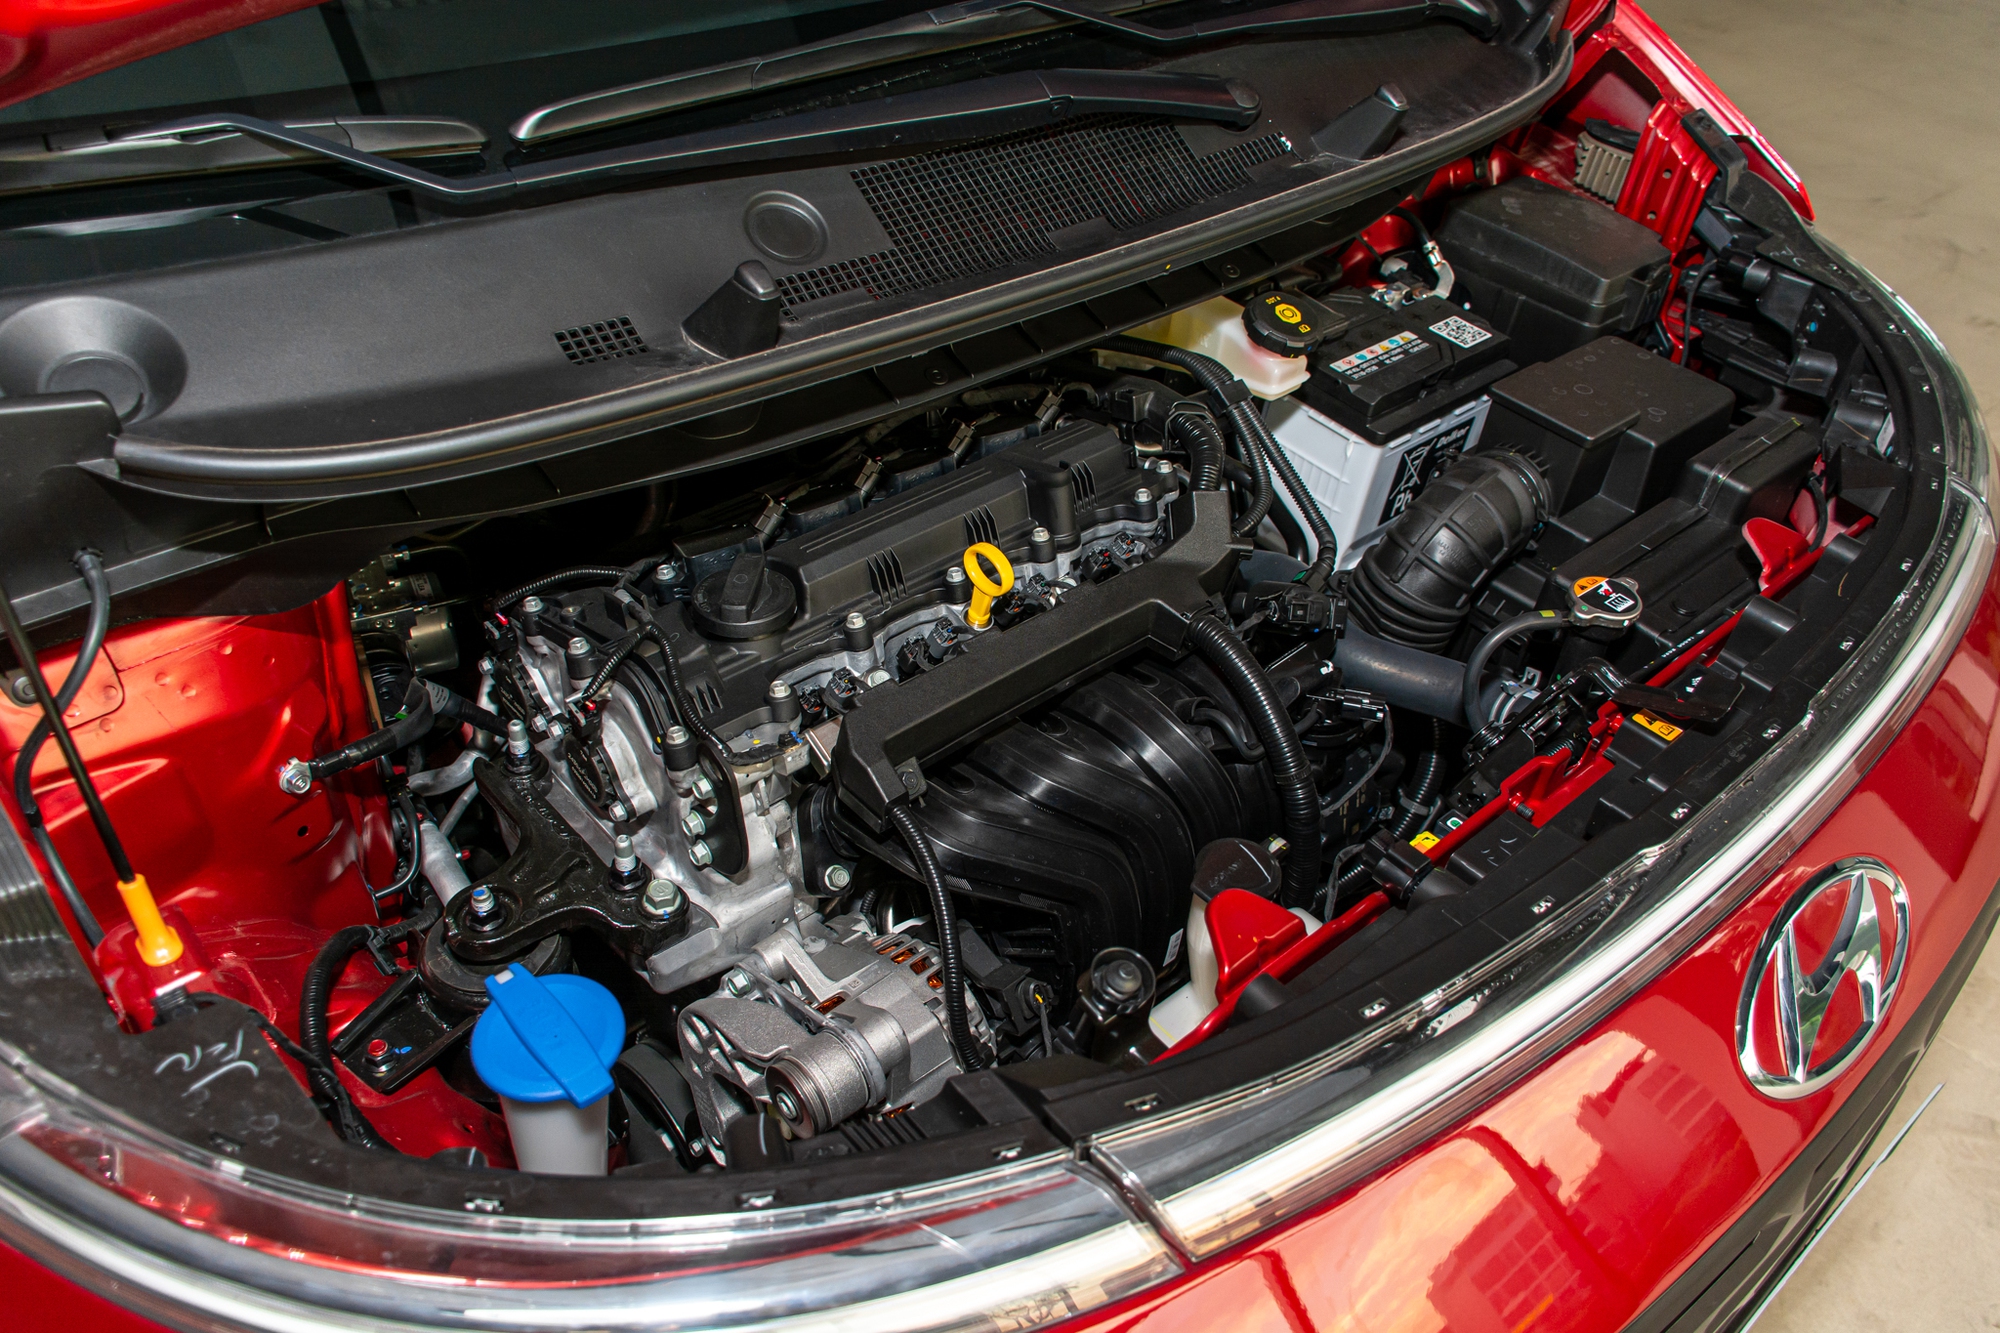 Chi tiết Hyundai Stargazer bản giữa giá 625 triệu đồng: Trang bị đủ dùng, thiếu gói an toàn chủ động - Ảnh 17.